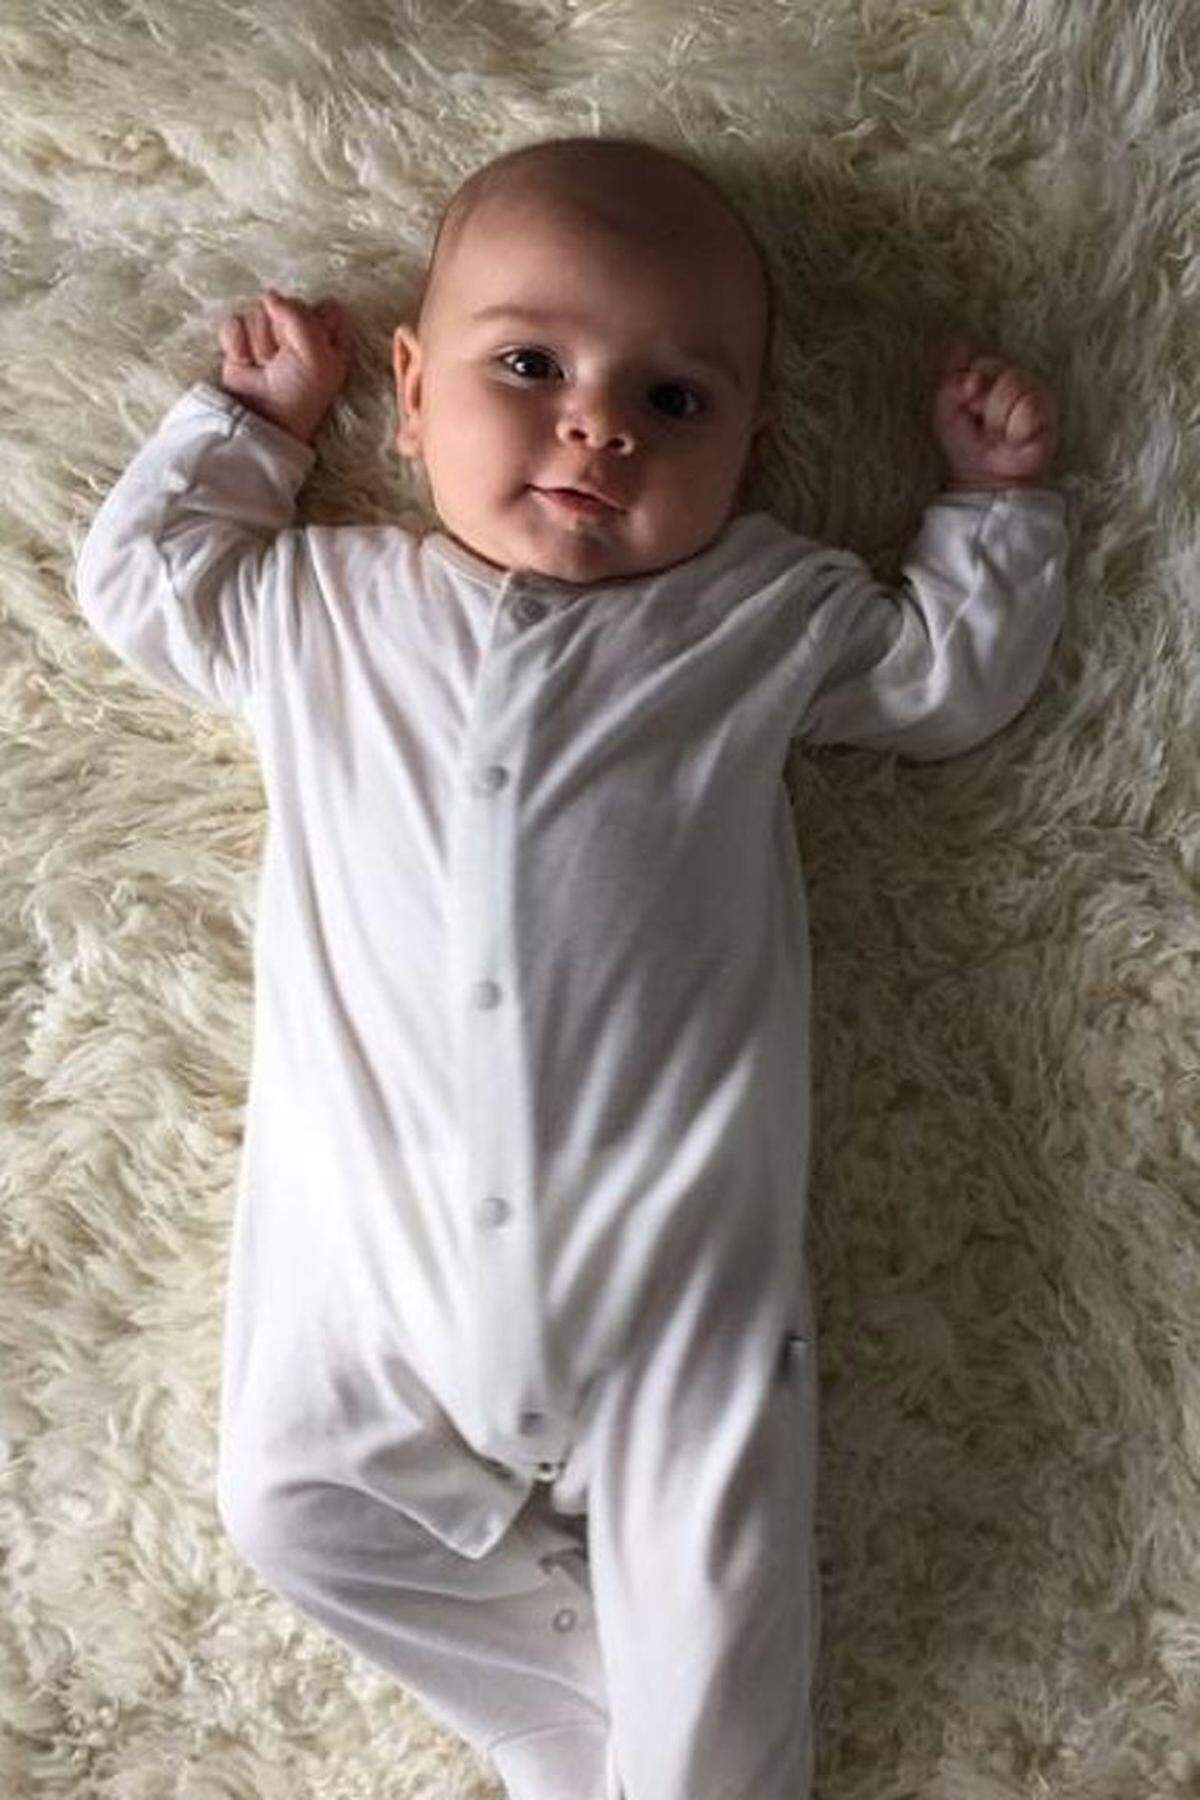 Nicht mehr ganz so frisch, aber nicht weniger entzückend ist Reign Aston. Er ist der ganze Stolz seiner Mutter Kourtney Kardashian. Knapp vier Monate nach seiner Geburt hatte er nun sein Instagram-Debüt.